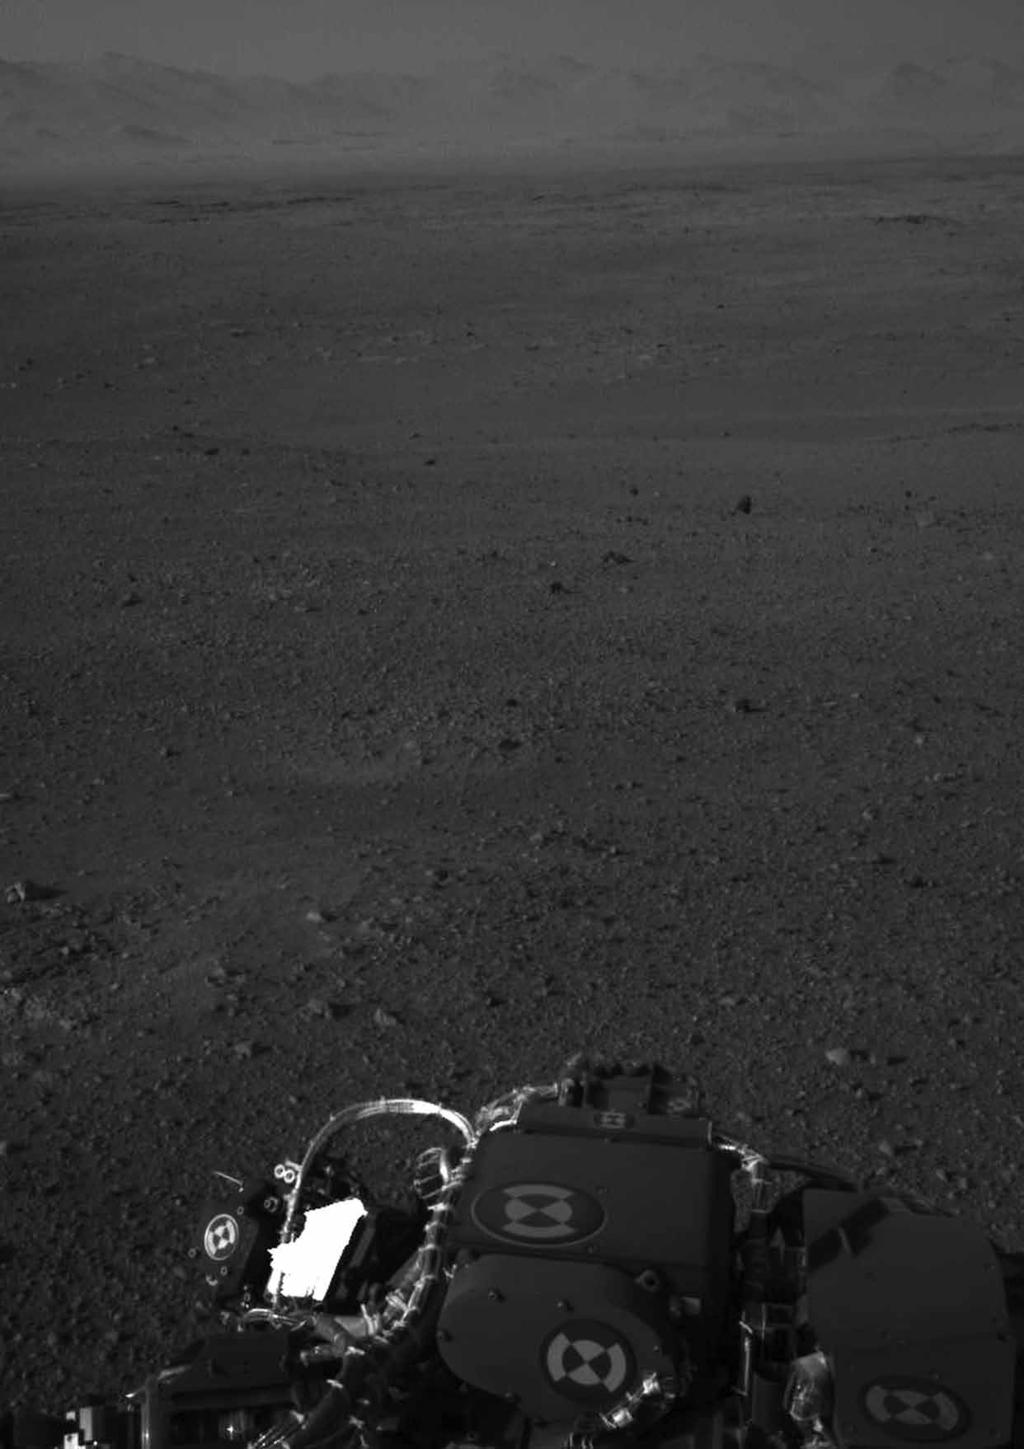 КЈУРИОСИТИ УСПЈЕШНО СЛЕТИО НА МАРС И ПОСЛАО ПРВЕ СНИМКЕ Летјелица с возилом «Кјуриосити» (Curiosity), успјешно је слетила на Марс, у једној од најамбициознијих свемирских мисија свих времена у циљу